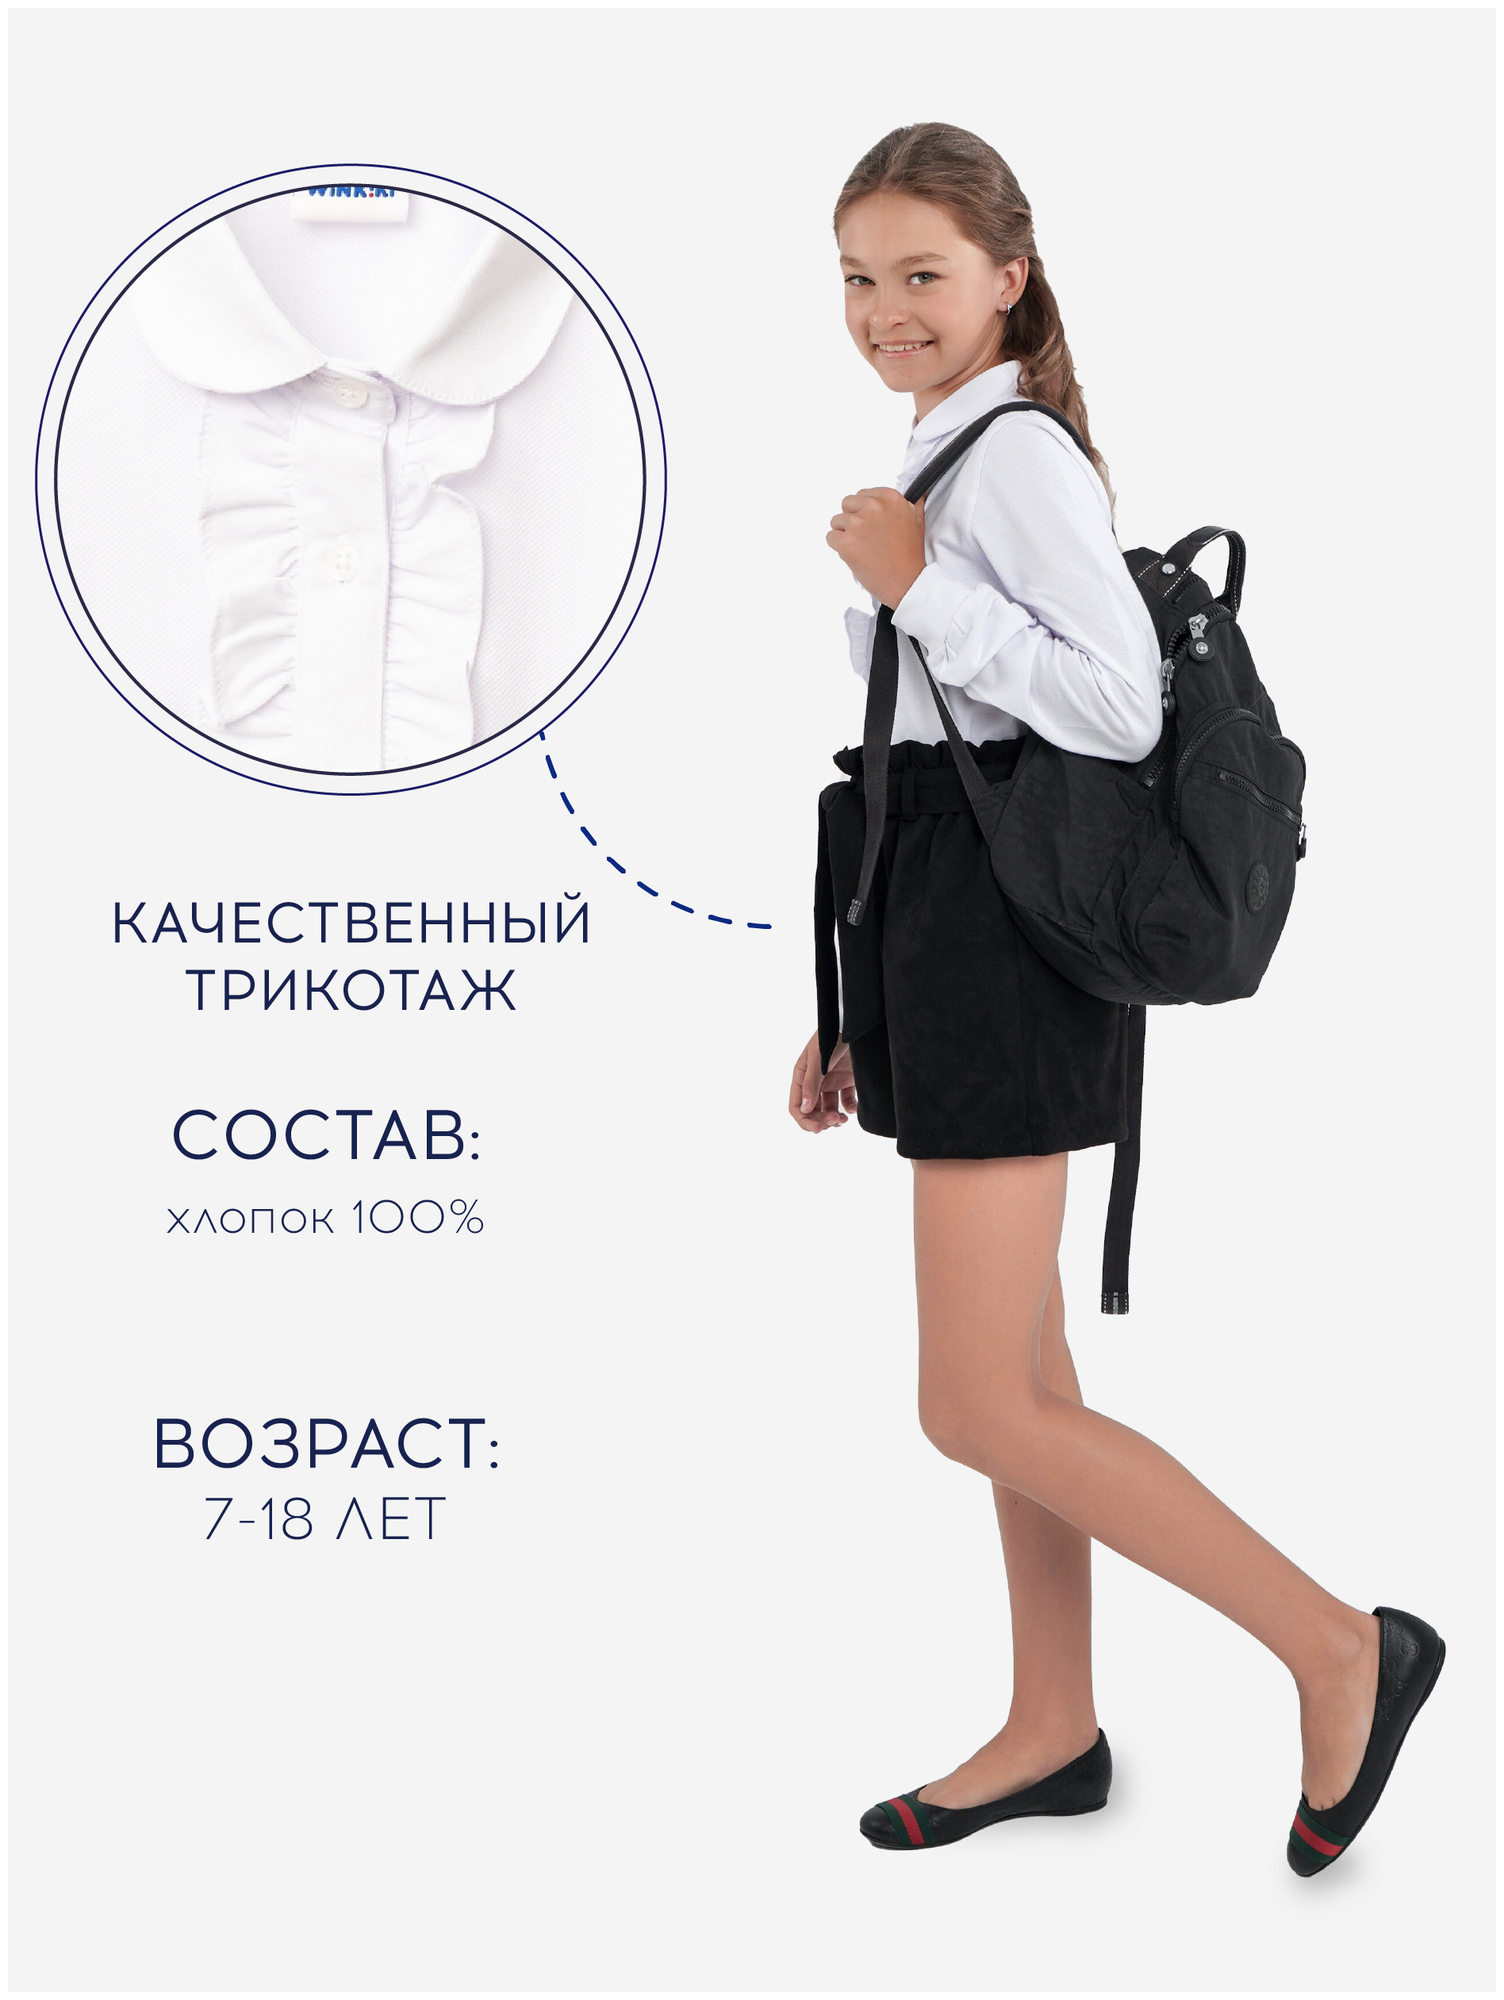 Школьная блуза Winkiki